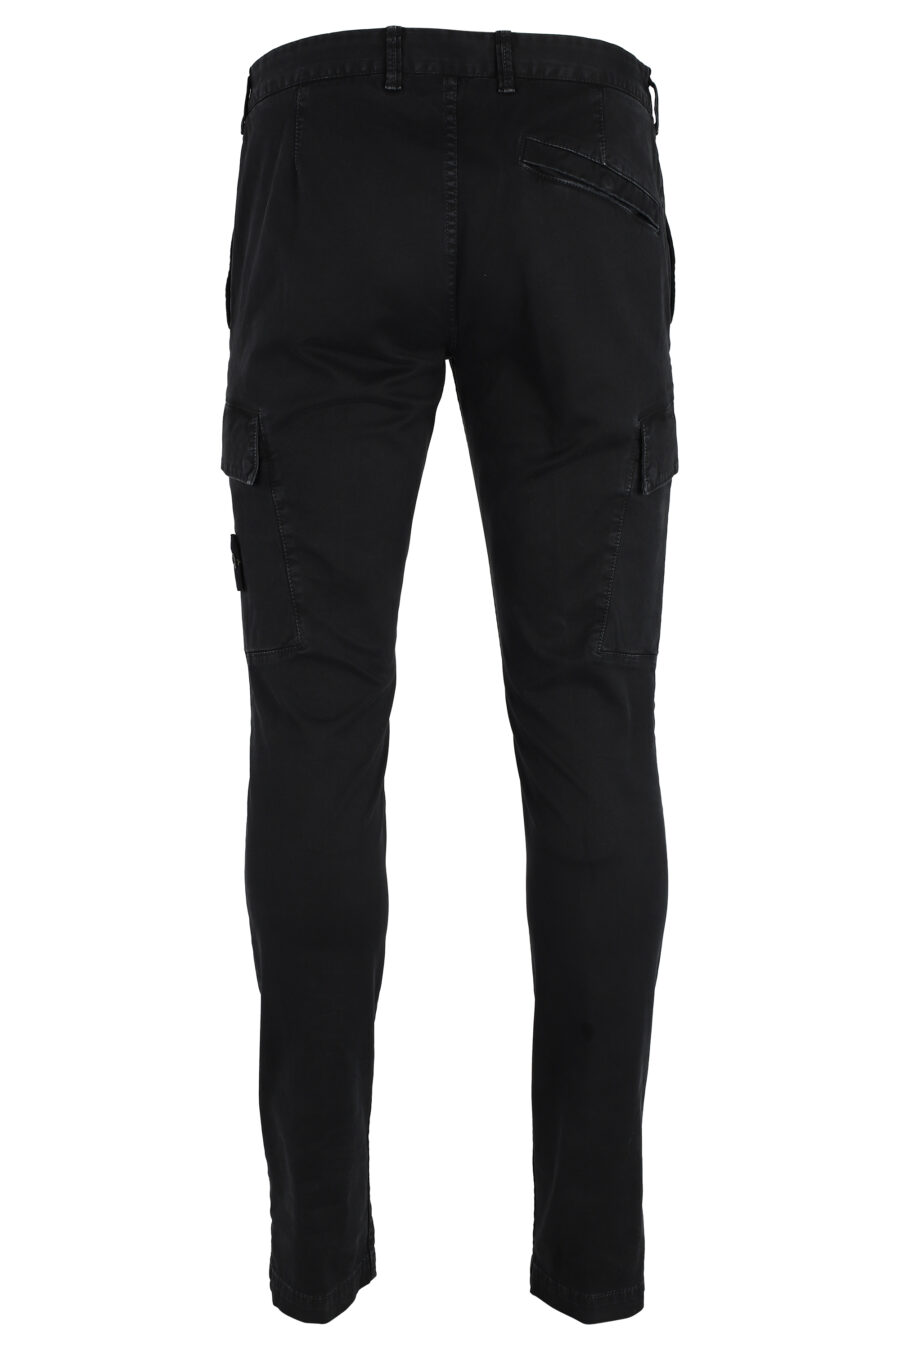 Pantalón negro con bolsillos laterales y parche - IMG 4797